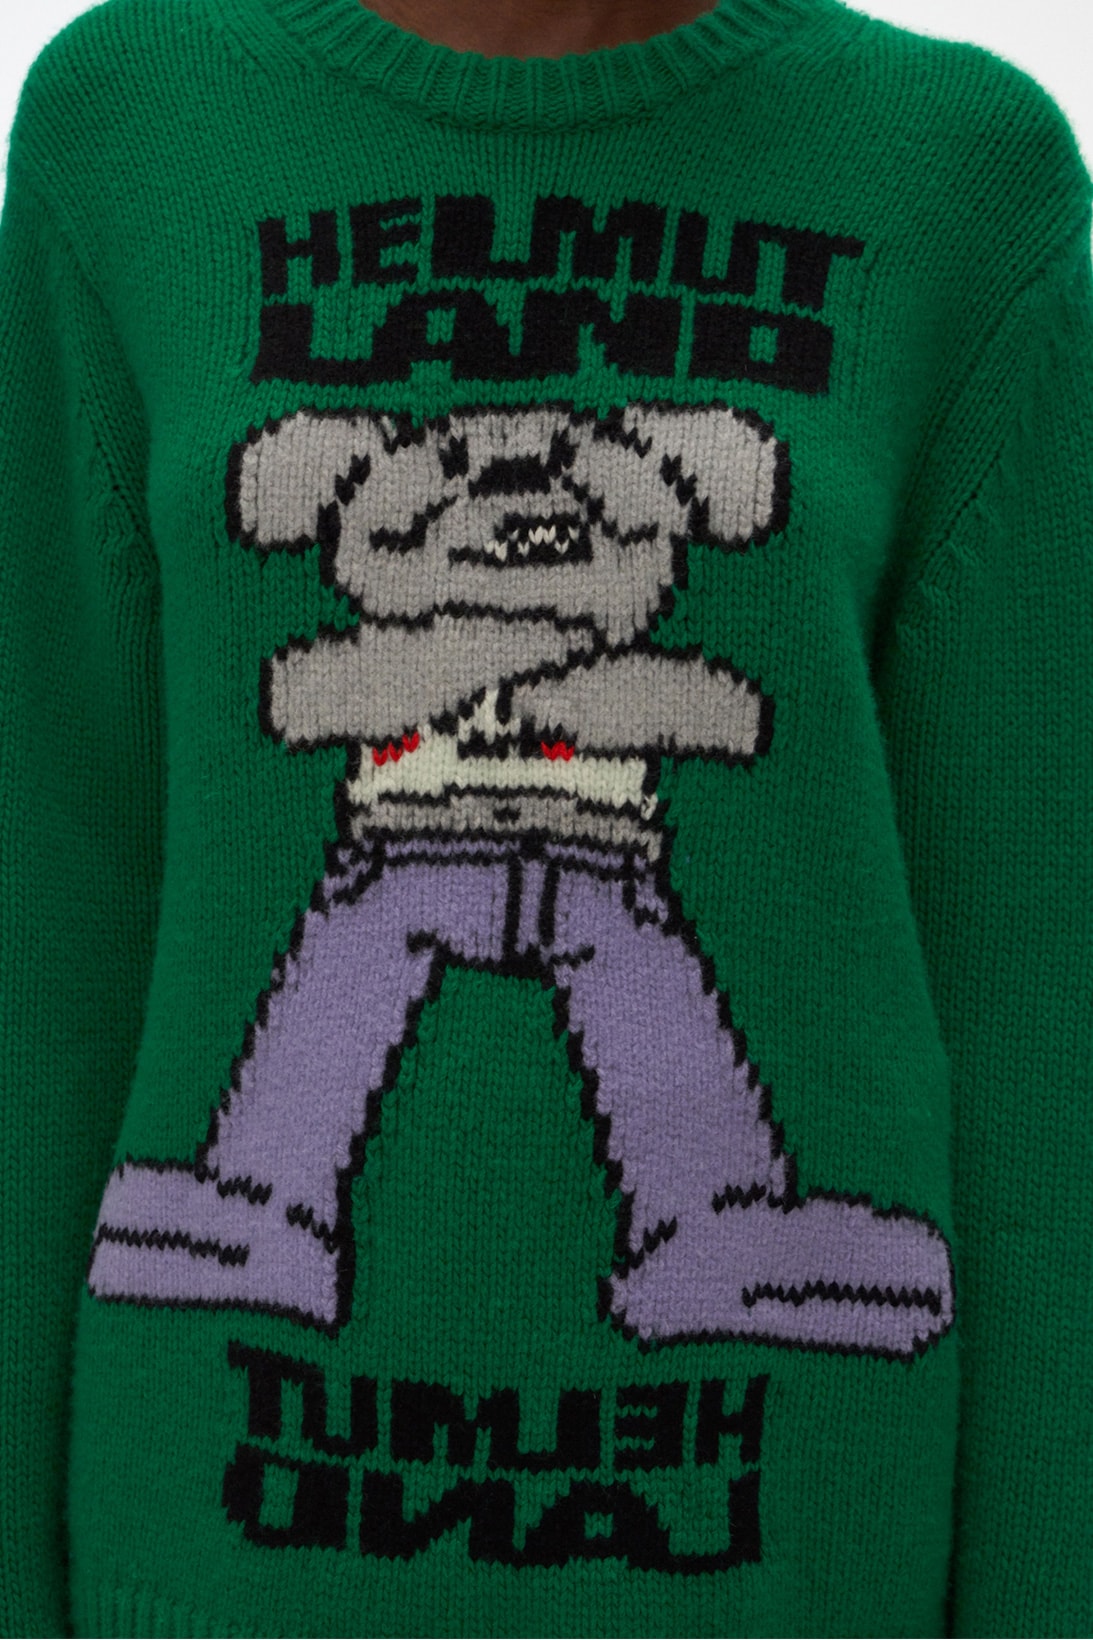 helmut lang land pz opassuksatit capsule collaboration hoodies shirts sweaters mouse head 95 rocket